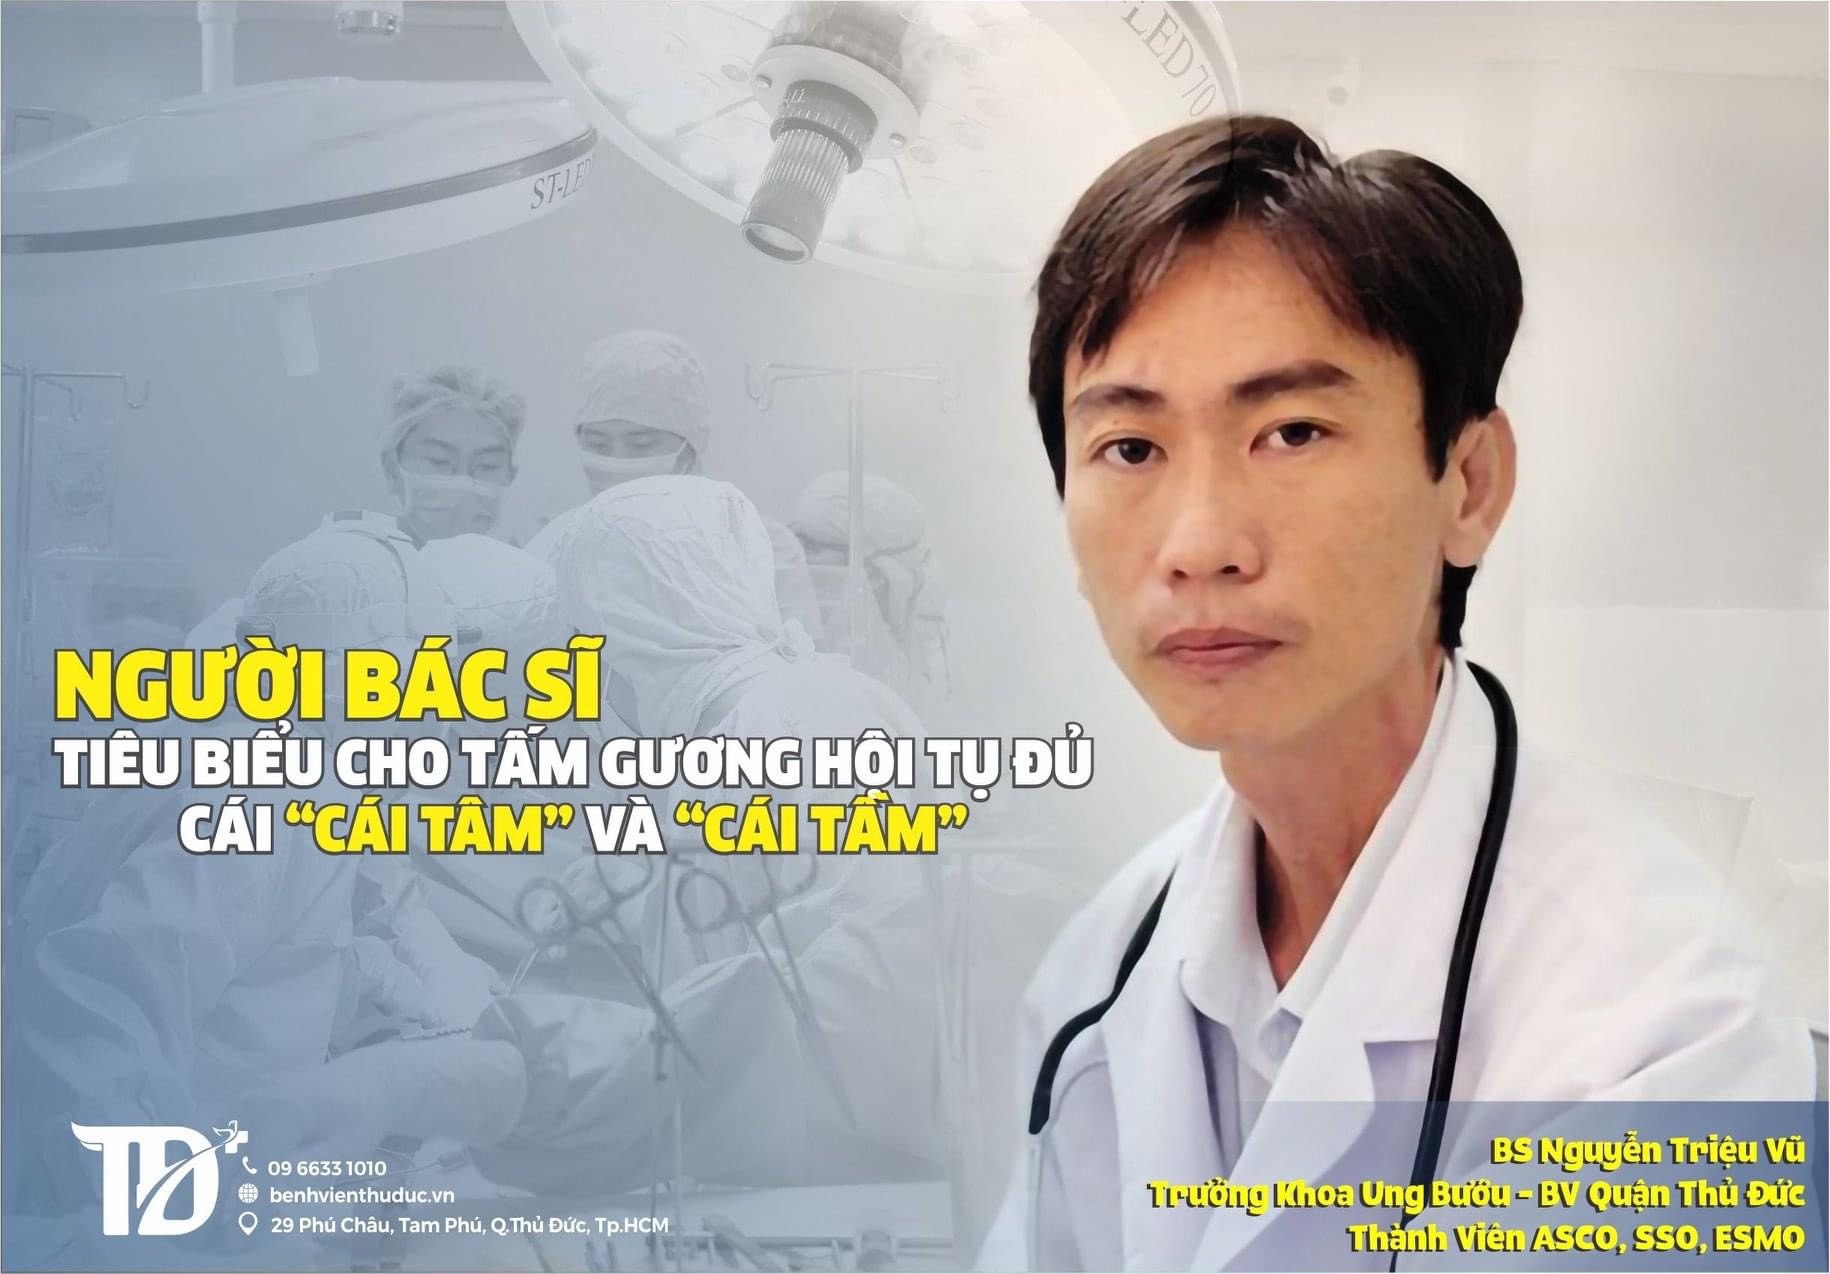 Nguyễn Triệu Vũ - Một bác sỹ có 